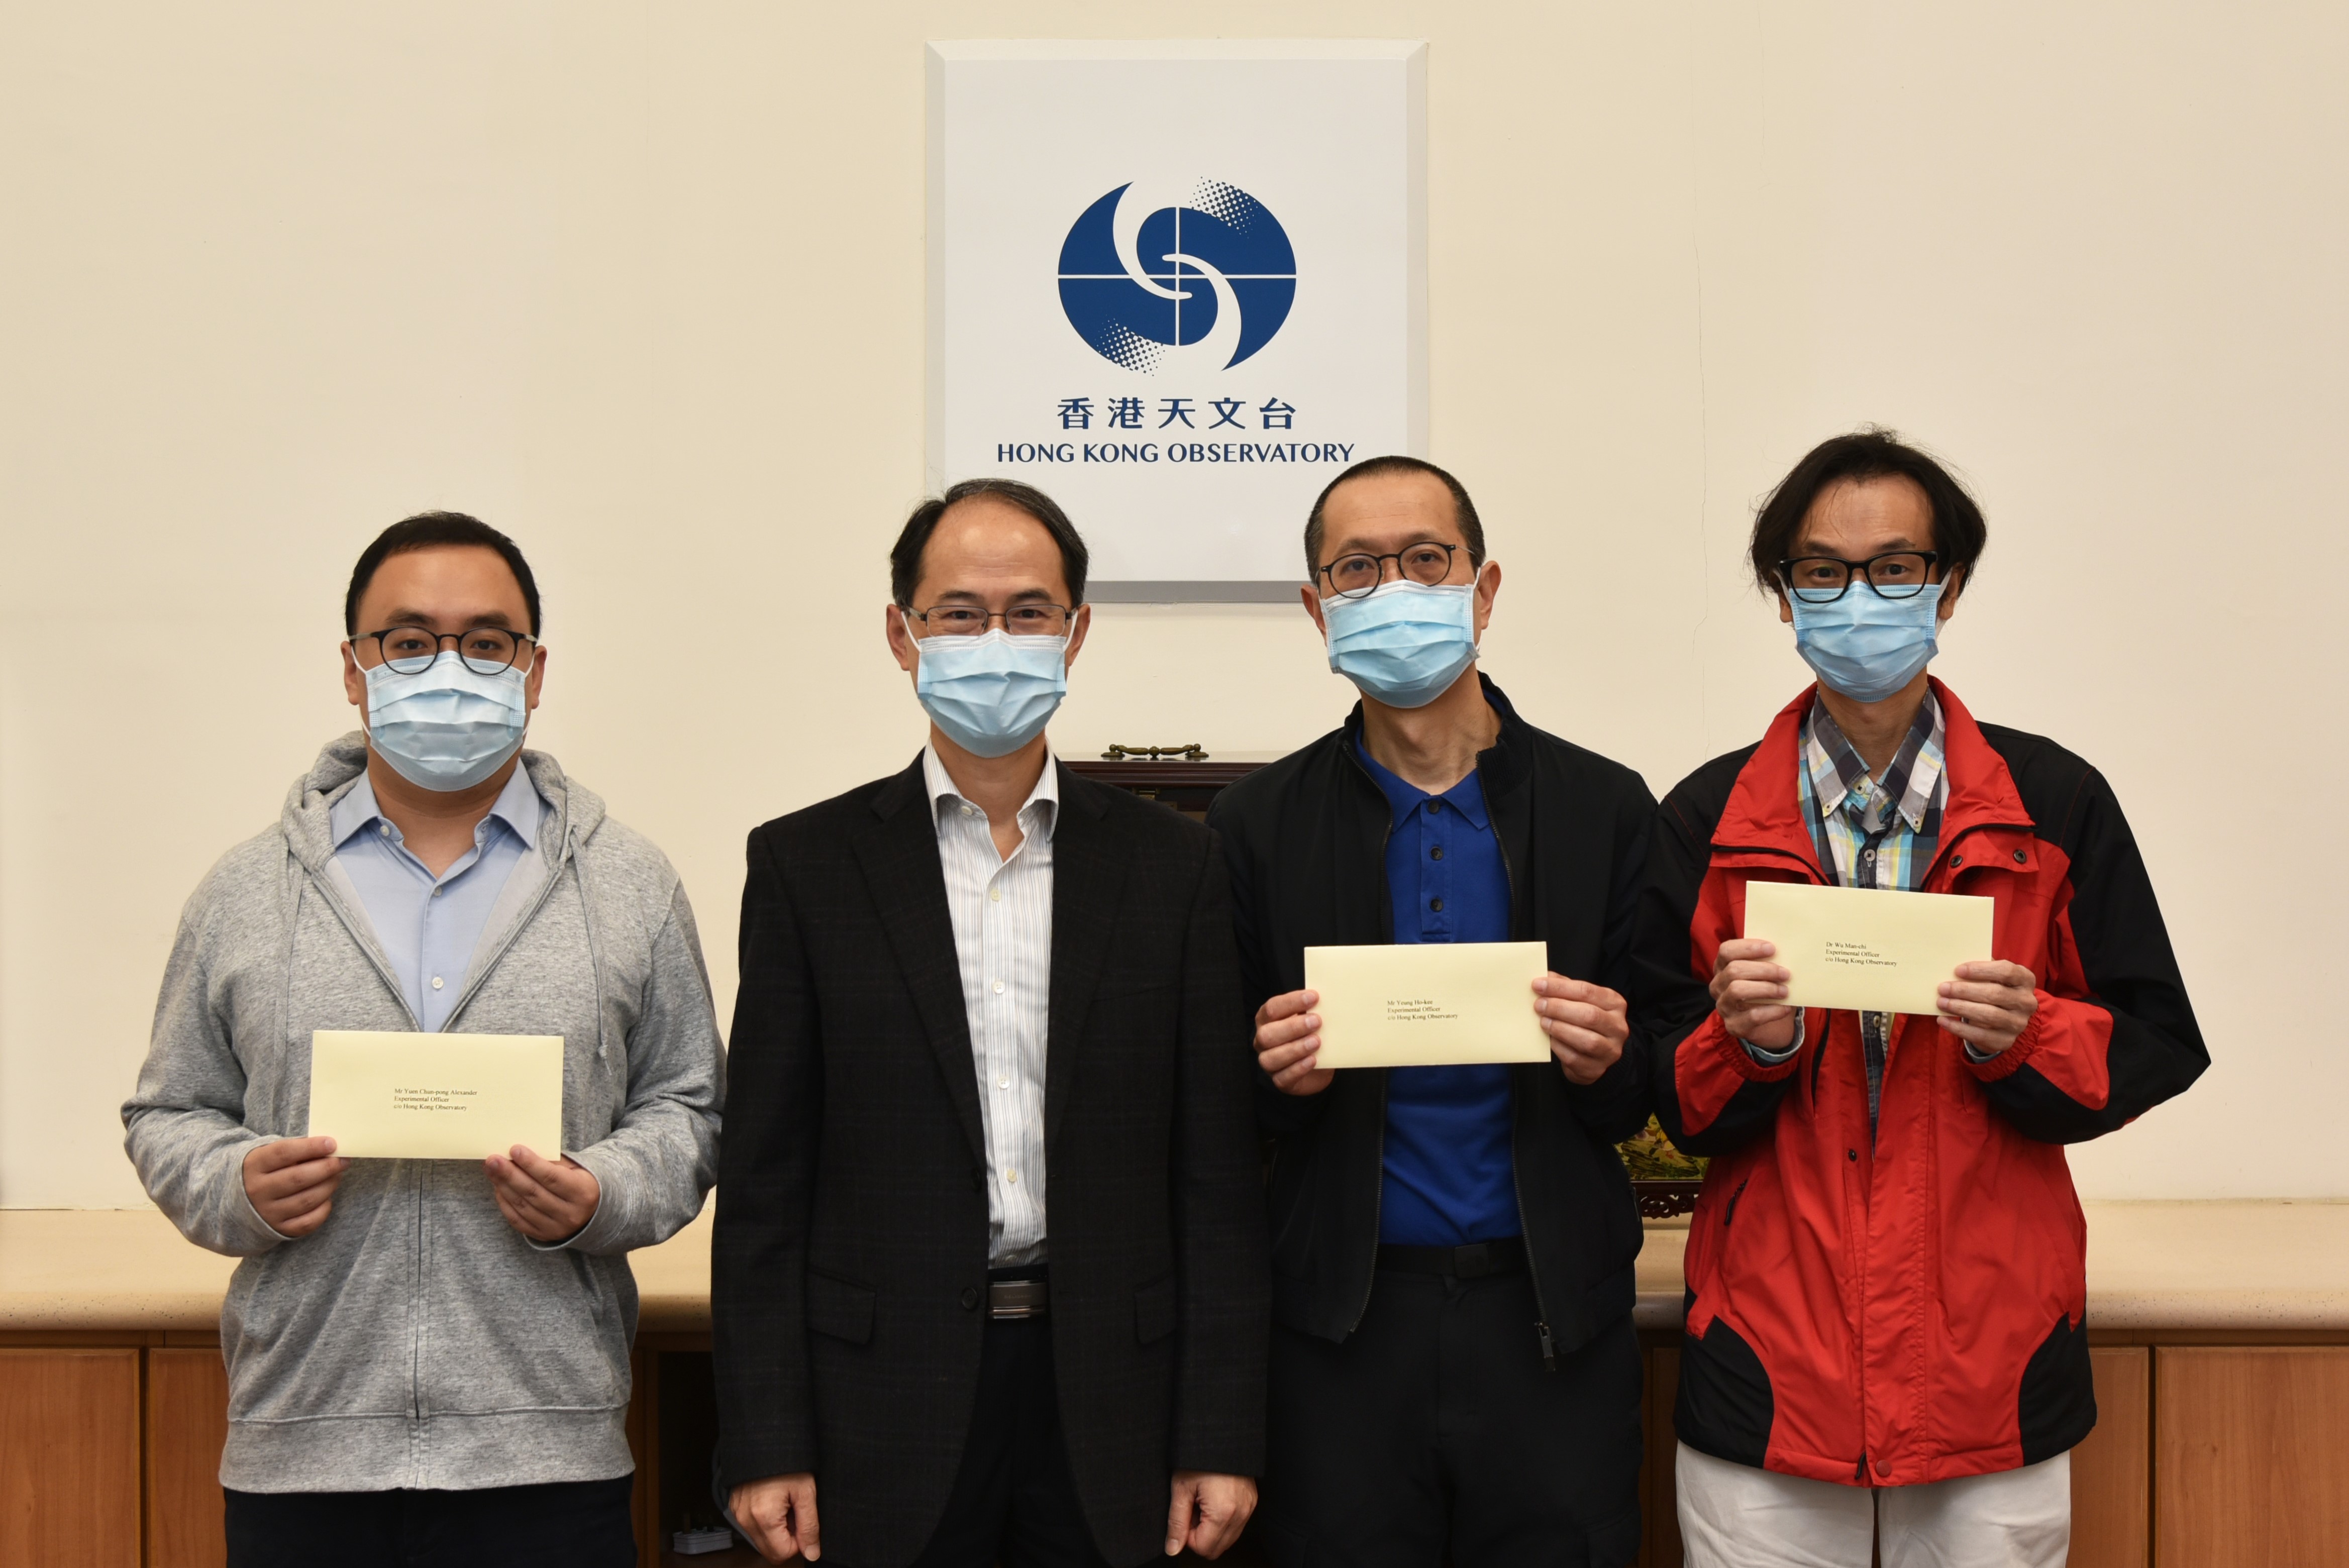 袁俊邦先生 (左一)、楊賀基先生 (左三)、胡文志博士 (左四) 及陳浩新先生晉升為高級學術主任